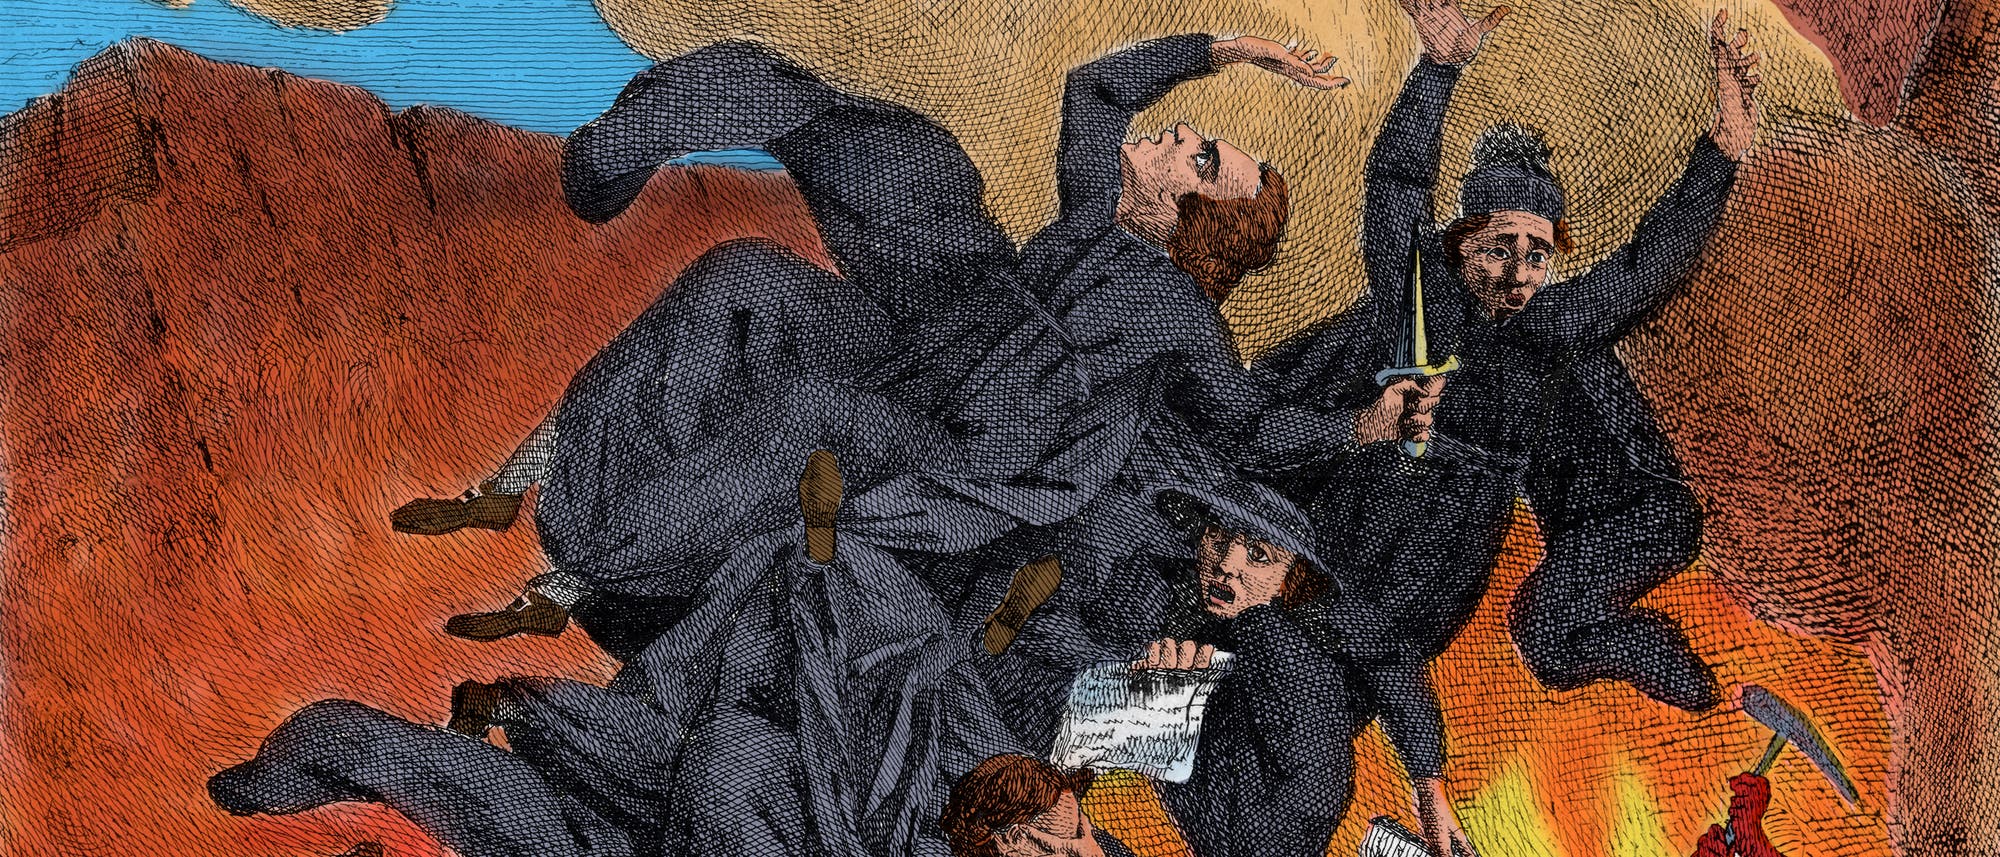 Jesuiten stürzen in die Hölle. Die zeitgenössische, aber modern kolorierte Radierung aus Frankreich stellt das Verbot des Ordens im 18. Jahrhundert dar.